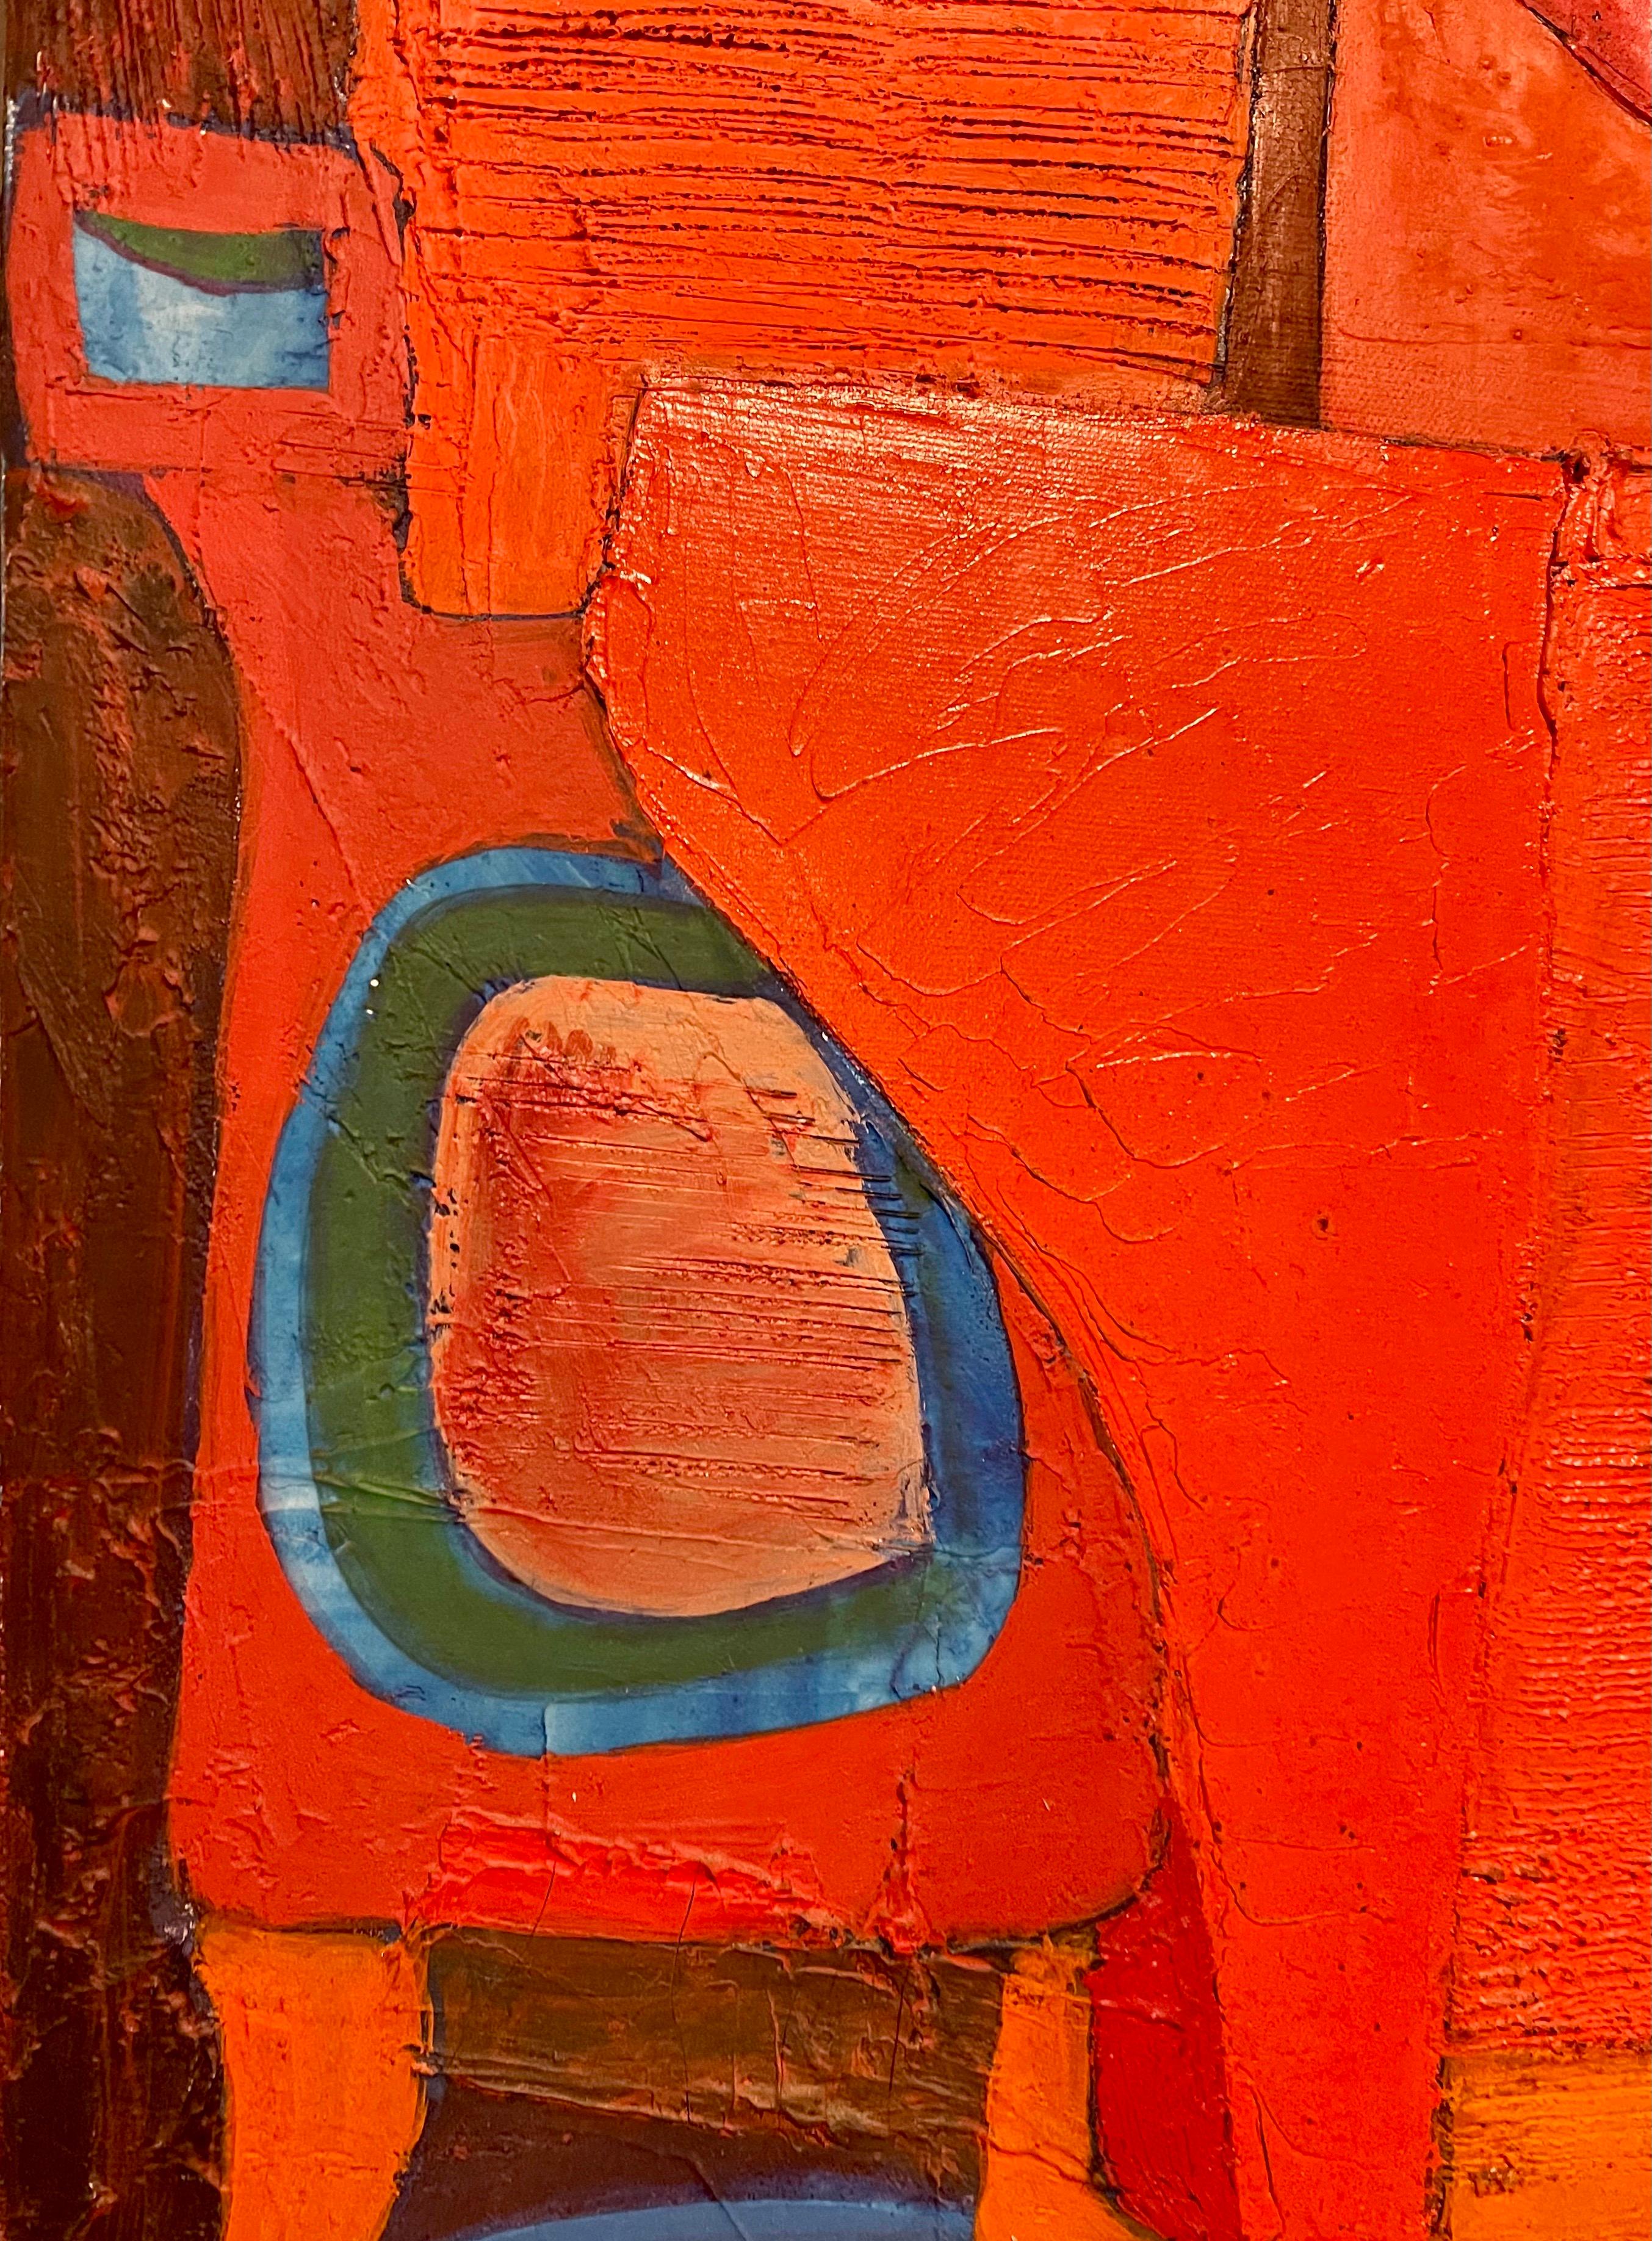 Abstracto Rojo (Rote Abstraktion)
Handsigniert und datiert 1966


Angel Ponce de León (spanisch-französisch, 1925-) 
Der Künstler, der offenbar noch Ende der 80er Jahre lebt, hat bis 1948 in Spanien gelebt. Er studierte in Madrid und Paris an der